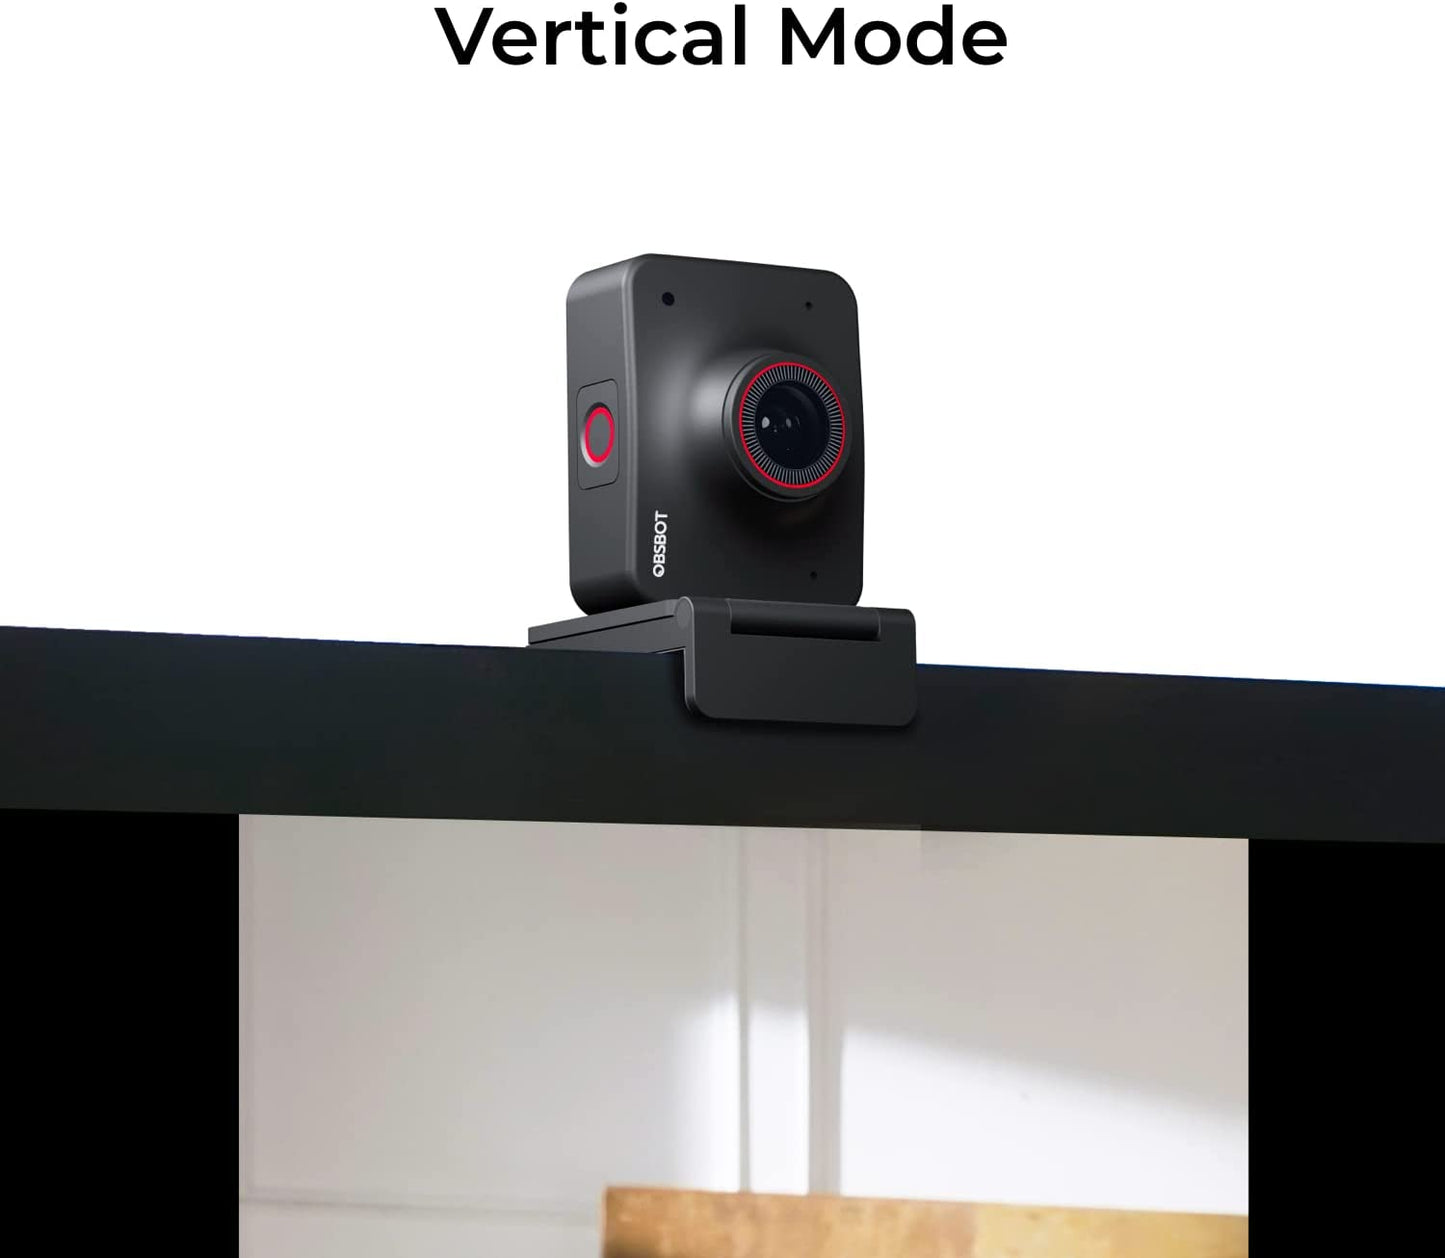 OBSBOT Découvrez la caméra réseau 4K HD AI Webcam 4K à arrière-plan virtuel alimenté par l'IA